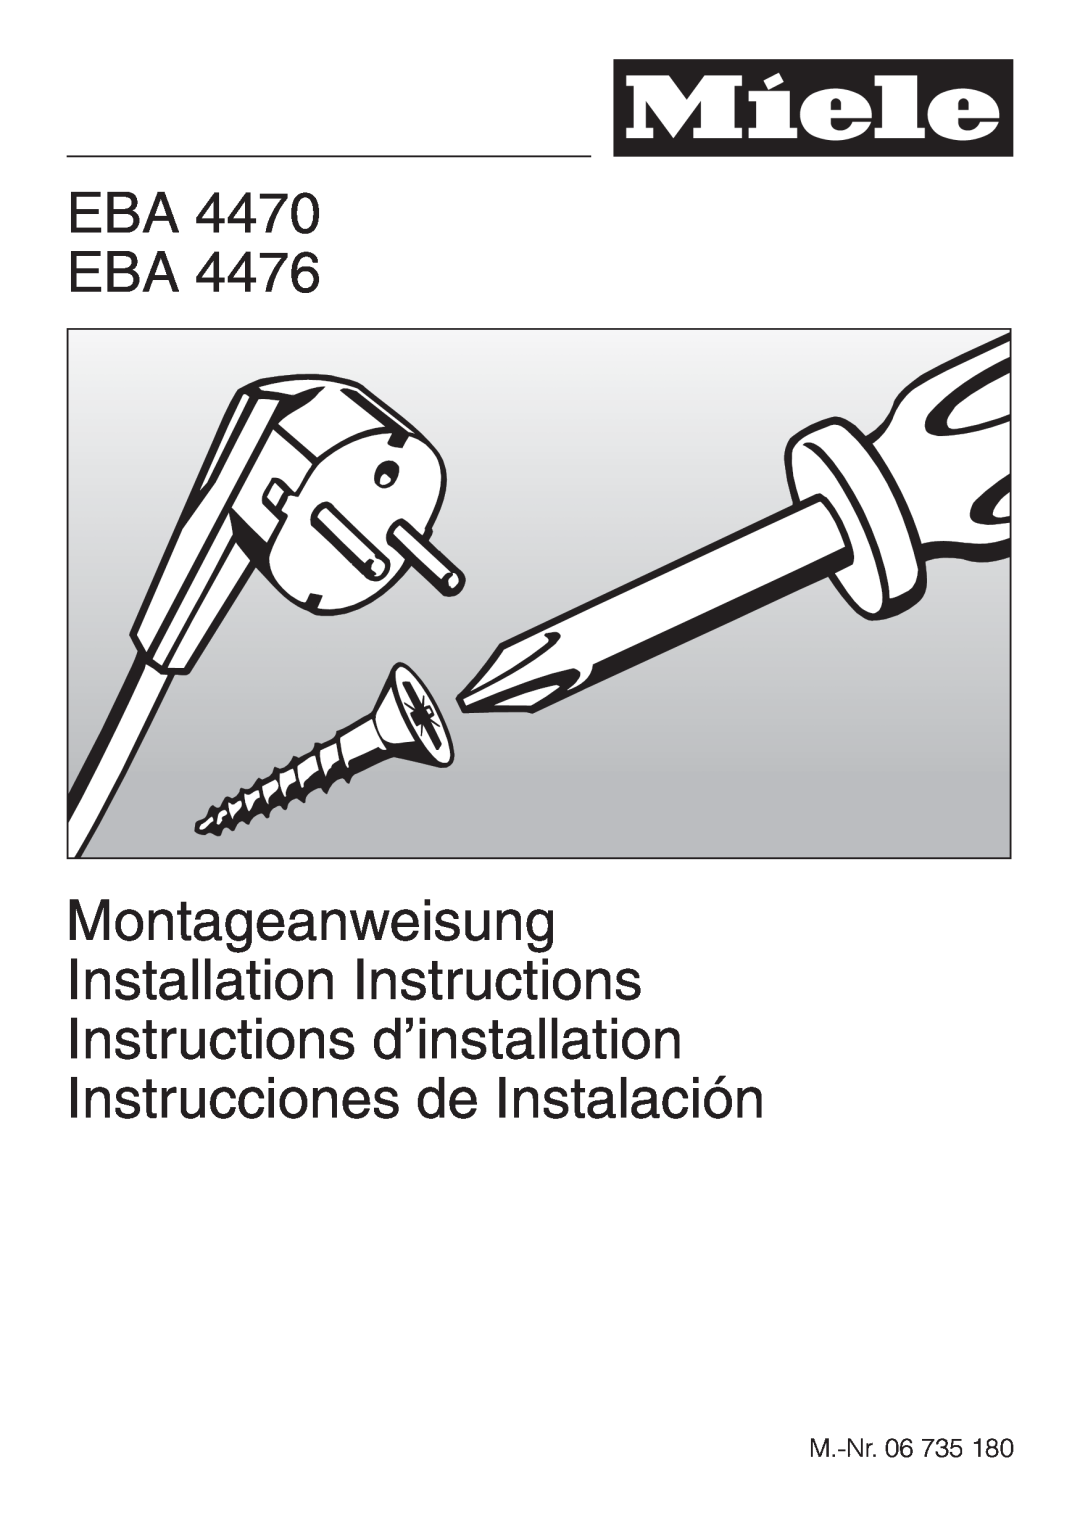 Miele EBA 4470, EBA 4476 installation instructions Eba Eba, M.-Nr.06 